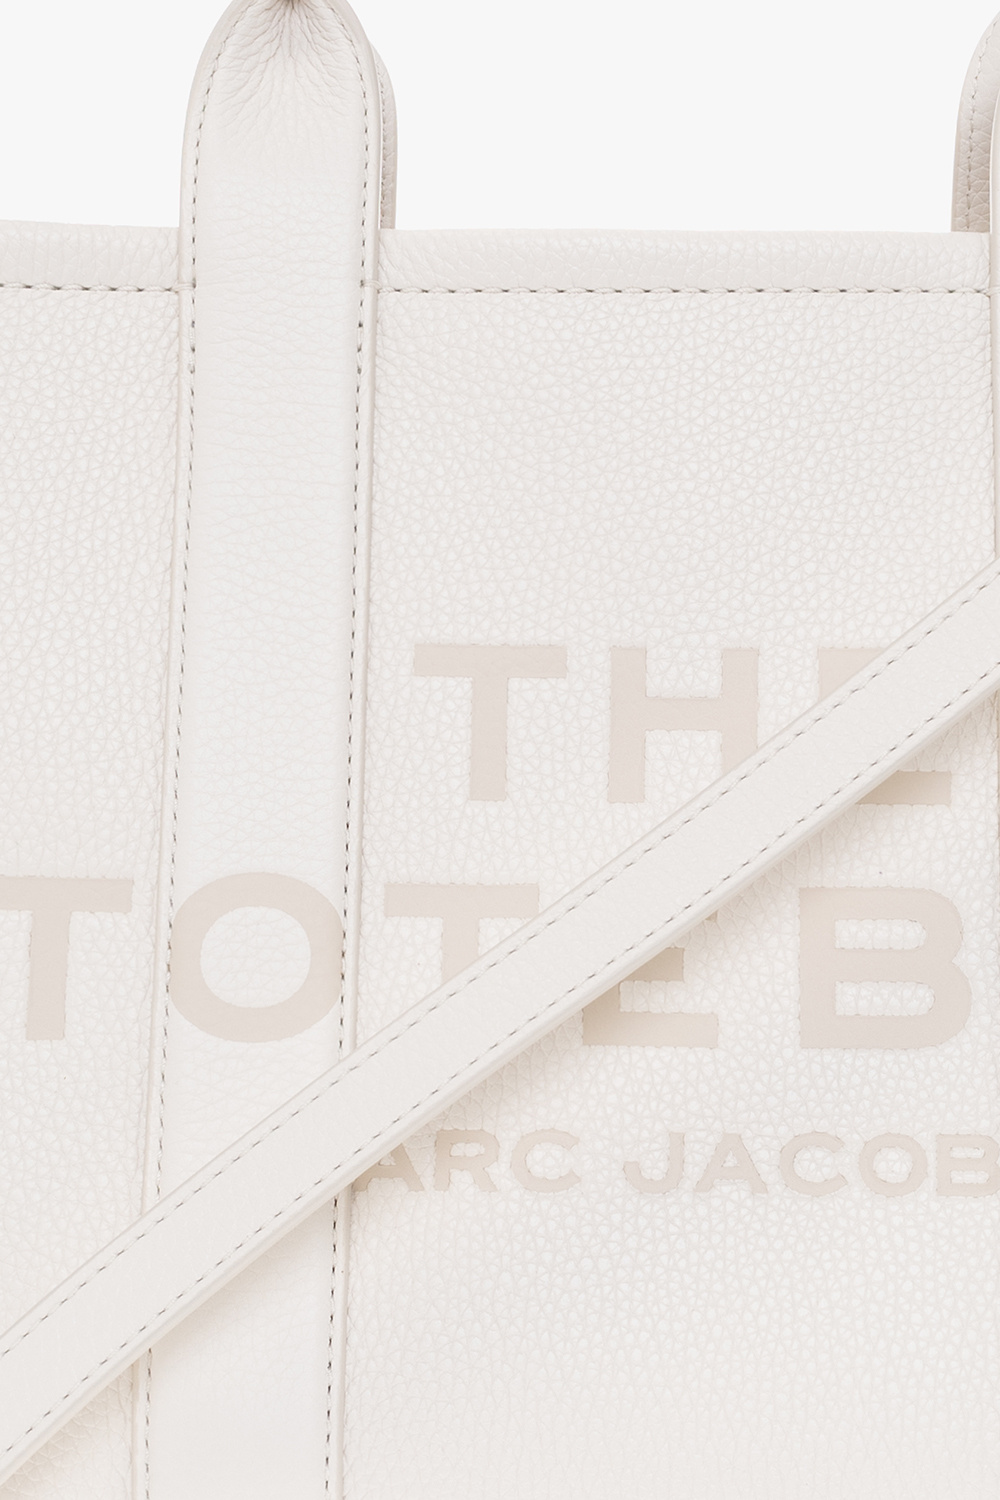 White 'Softshot Dtm' shoulder bag Marc Jacobs - Vitkac Spain